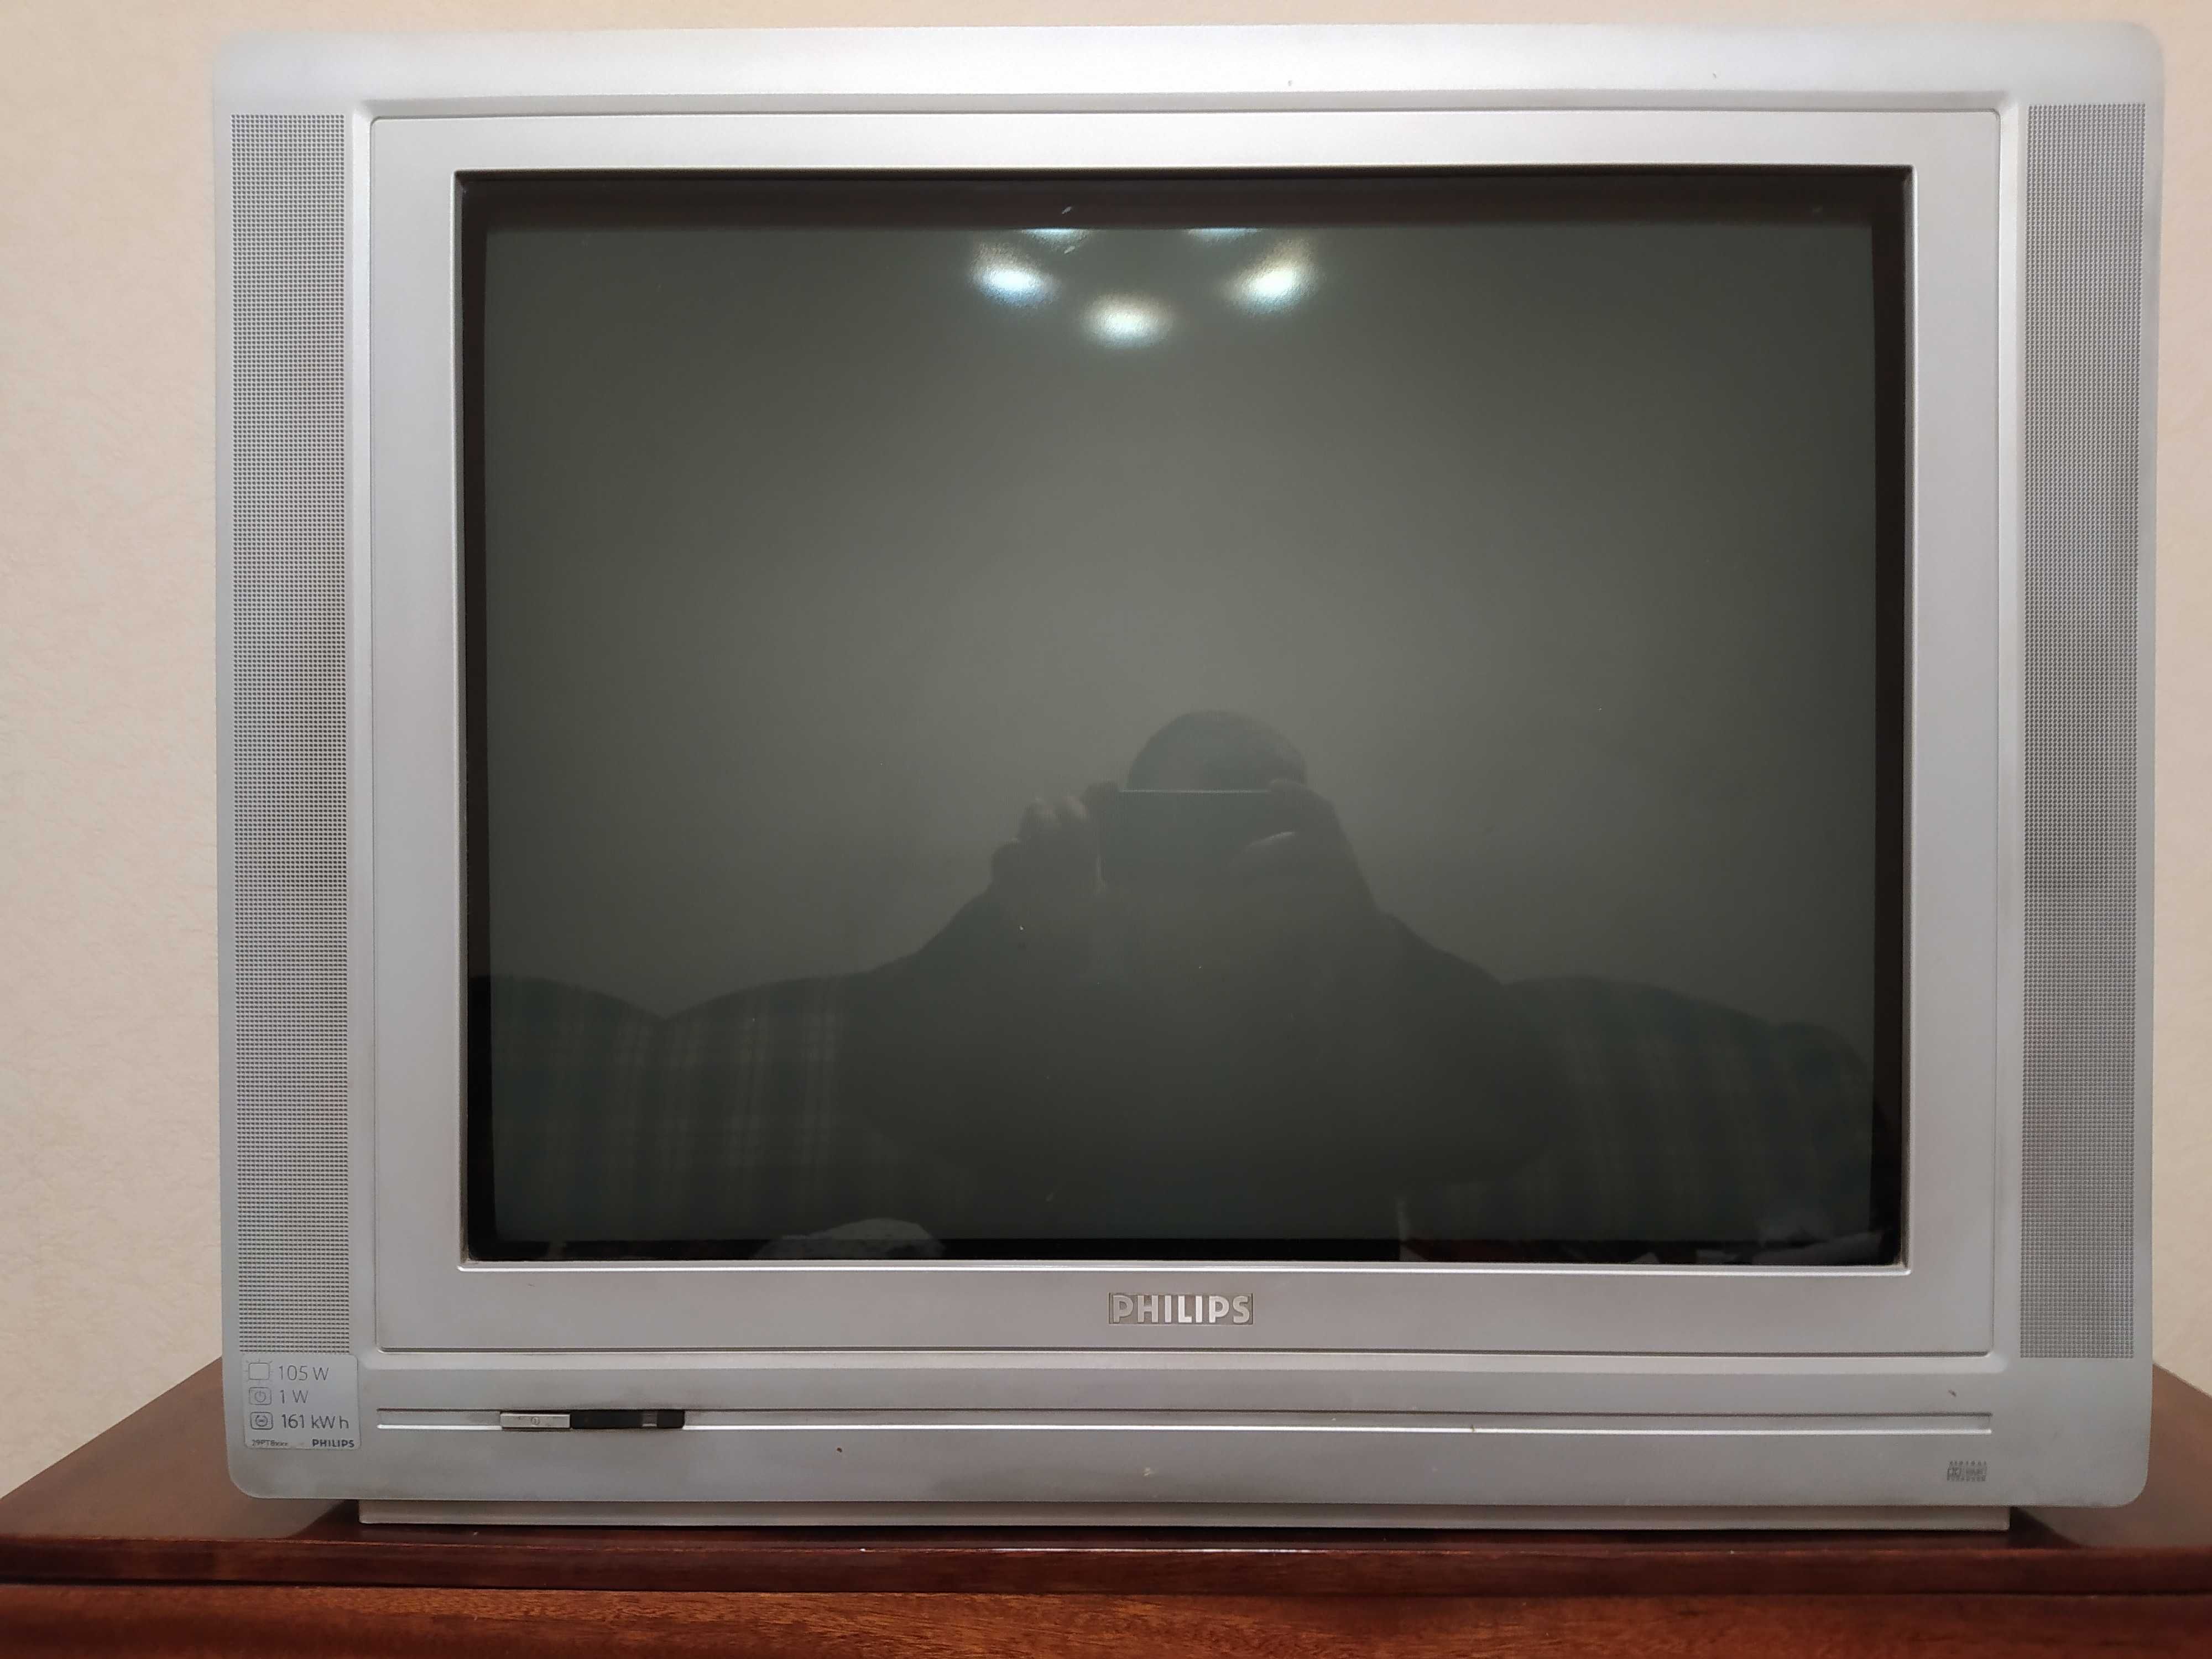 Телевизор 29" с плоским экраном Philips 29 PT 8641/12 100hz